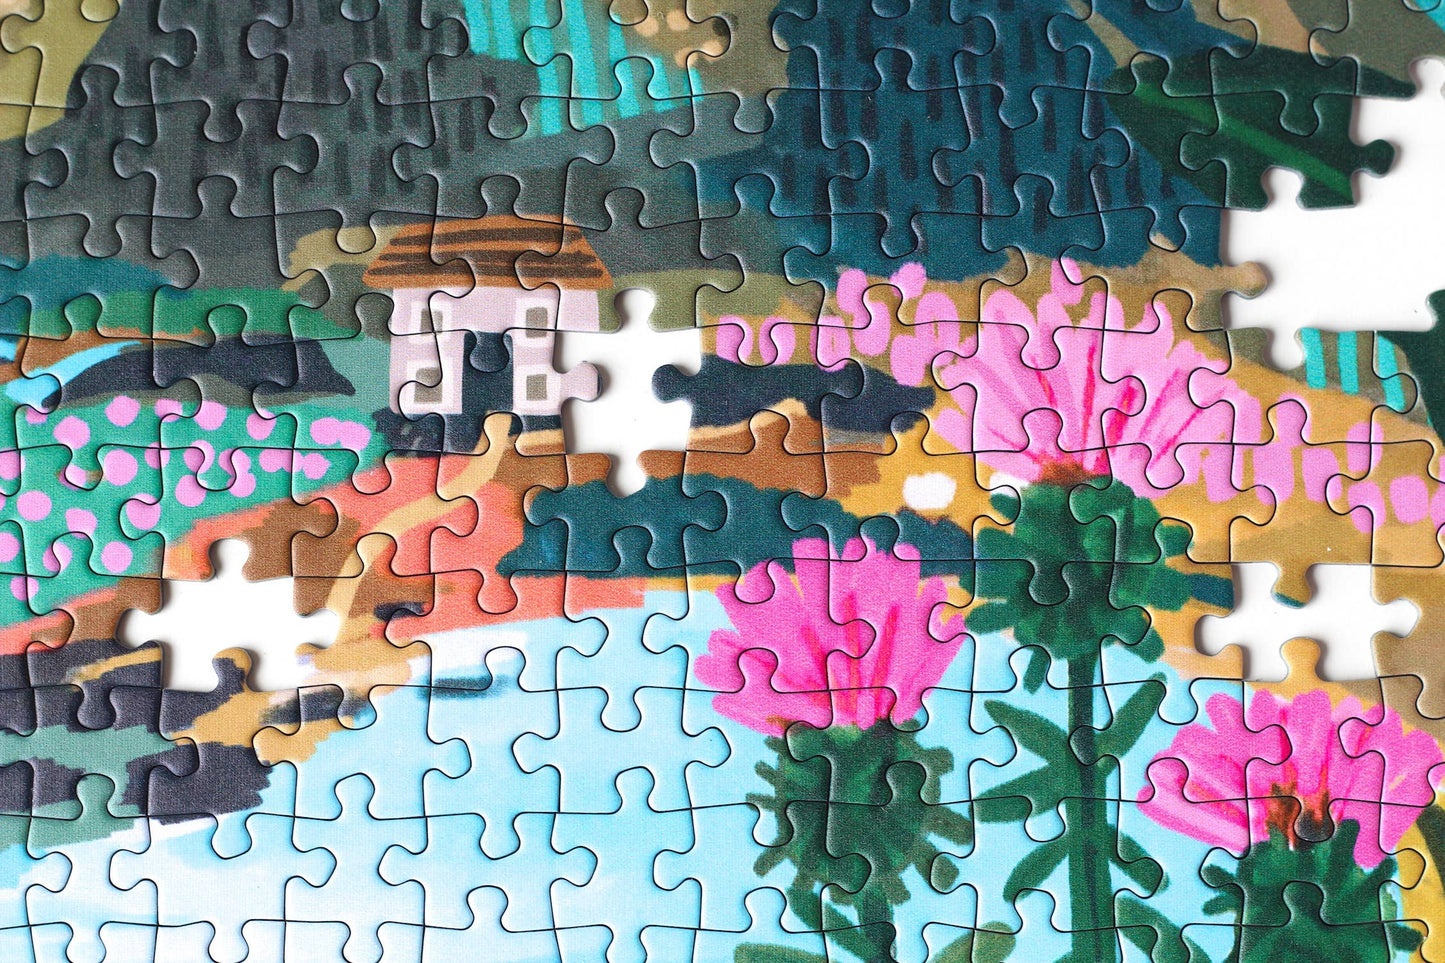 Snowdonia Puzzle, 1000 pieces